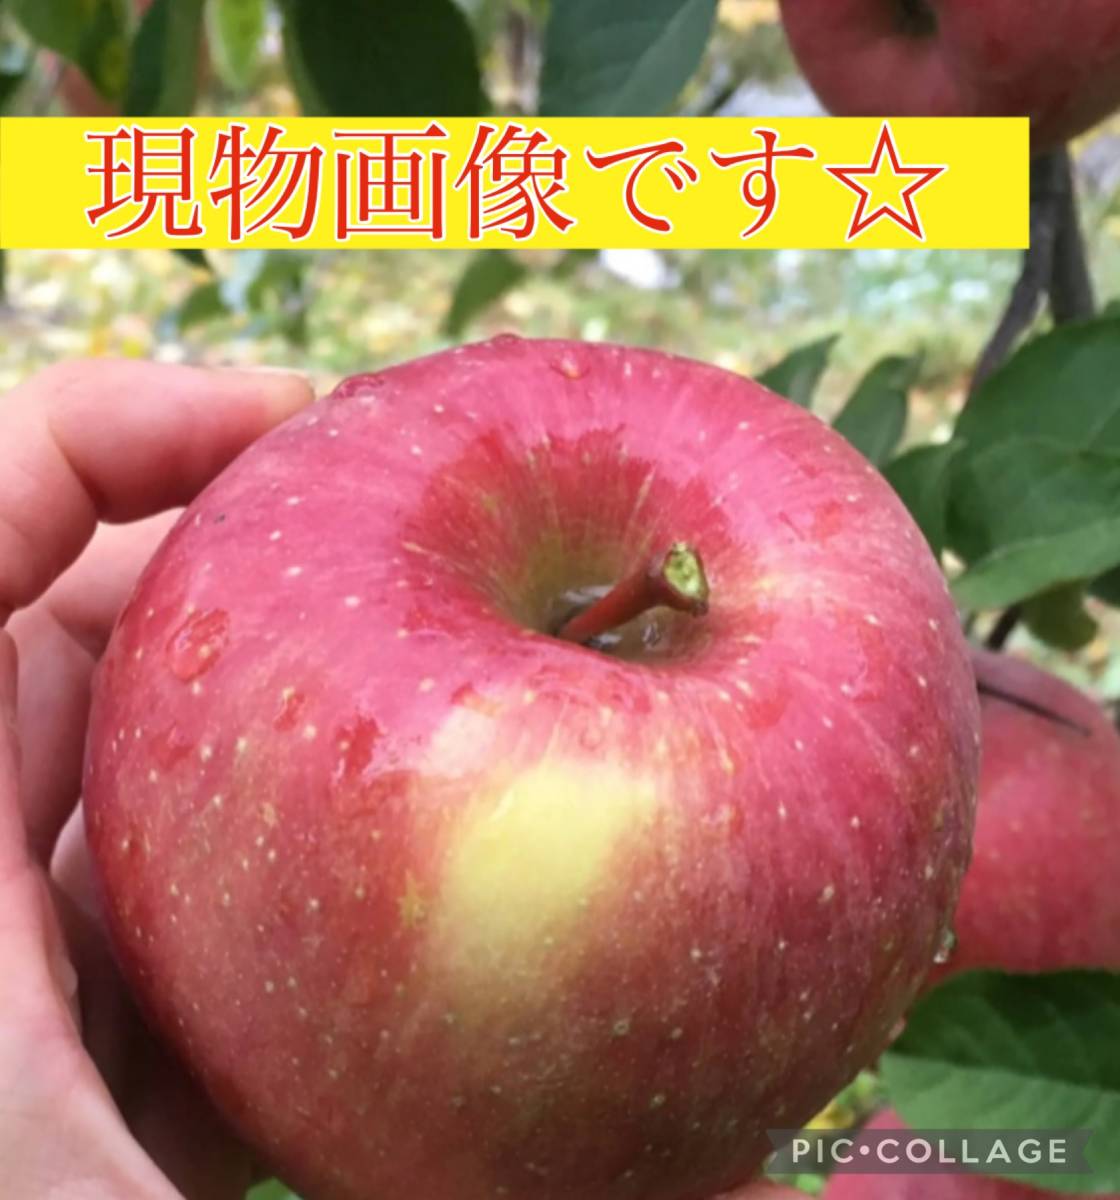 * есть перевод превосходящий товар ** Aomori производство .... много 15~18 шар входить коробка *.. яблоко Fuji яблоко *